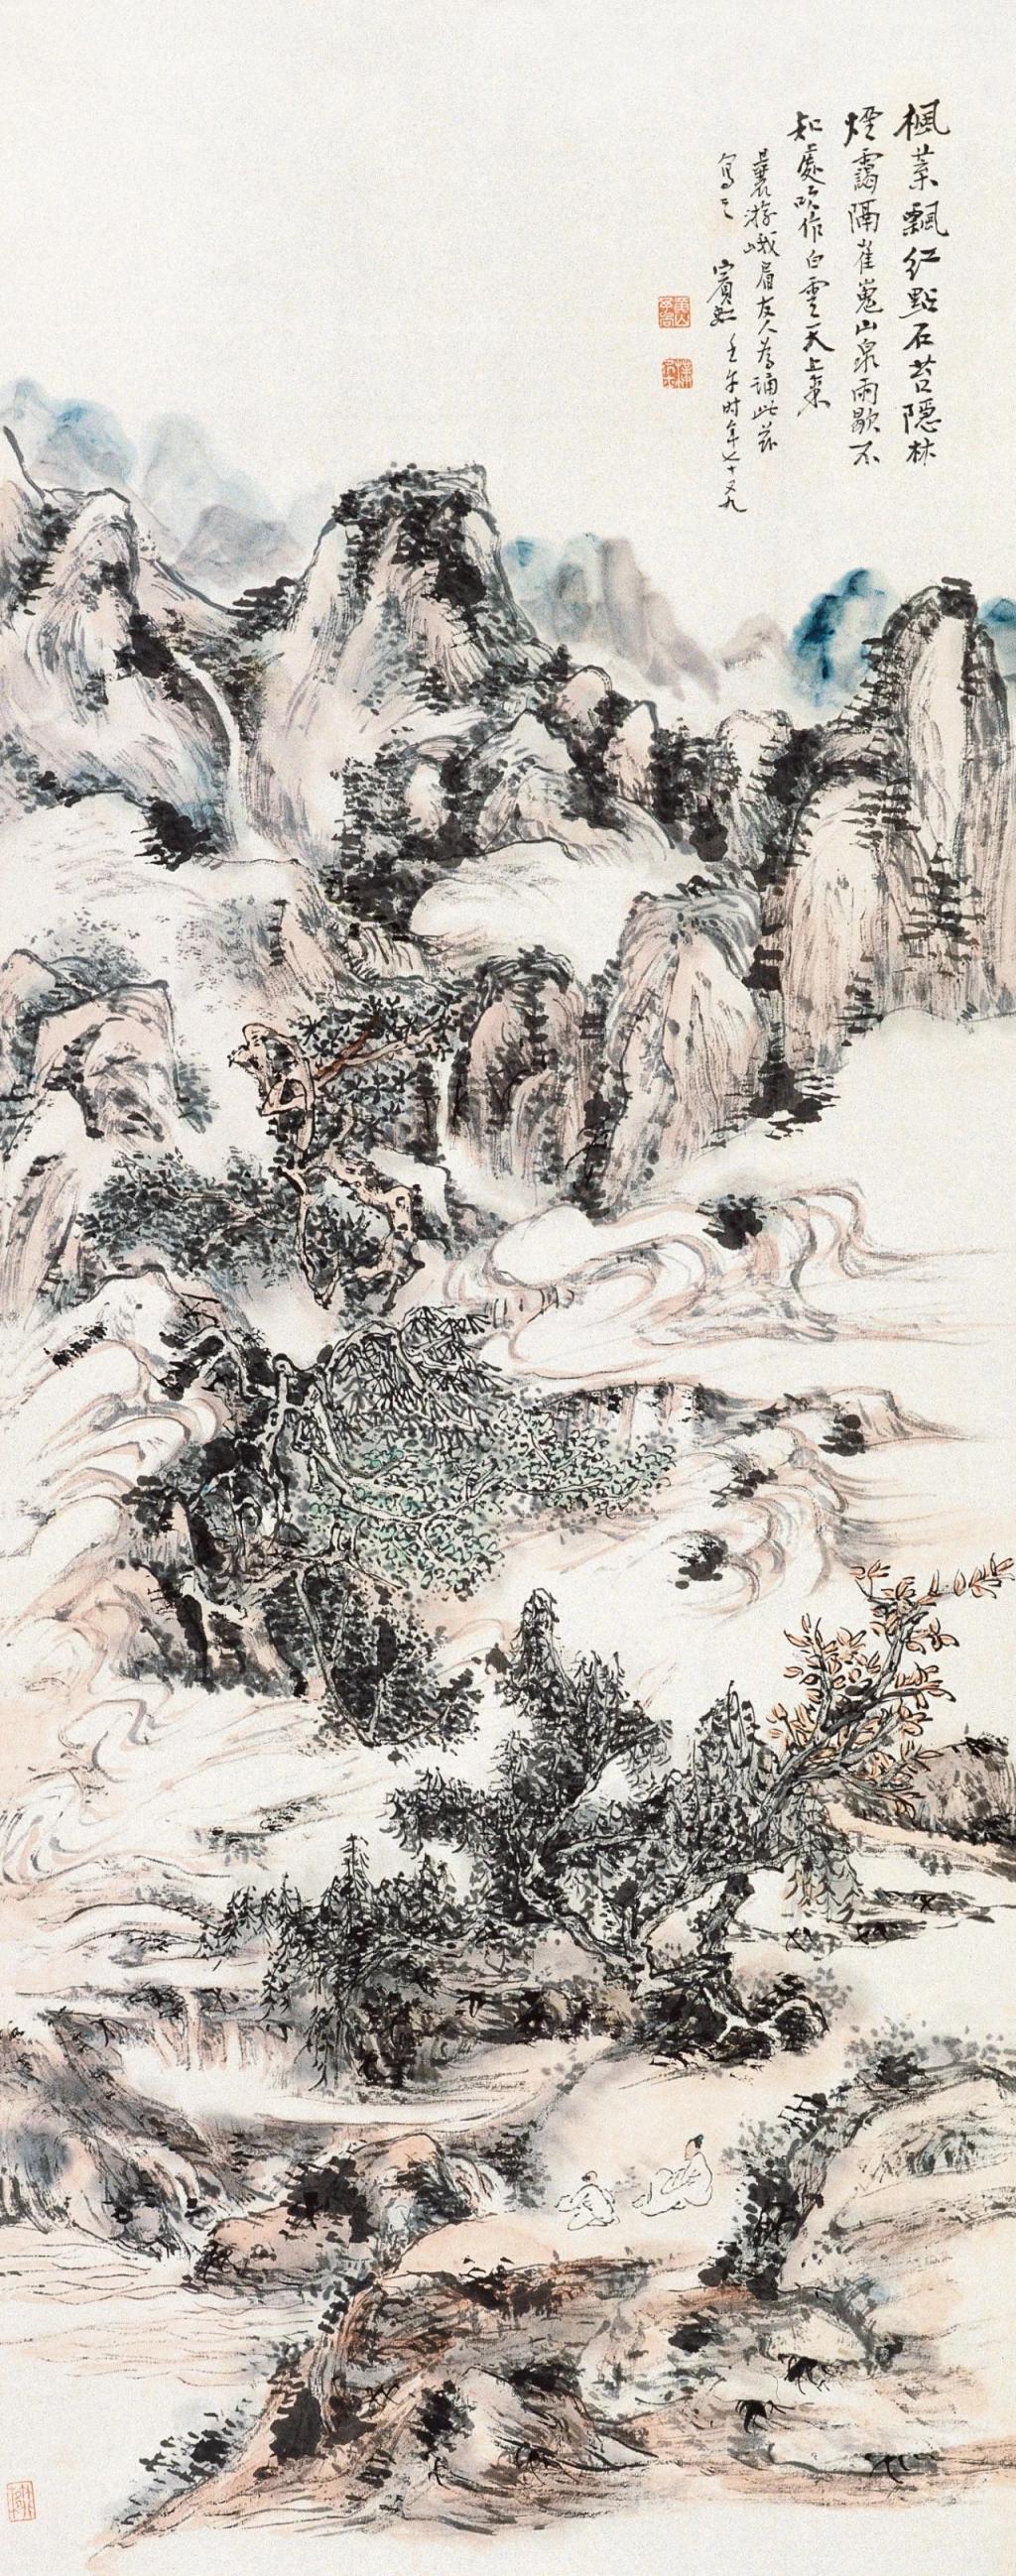 北京画院美术馆这个新展 带你再读黄宾虹“不朽的遗产”